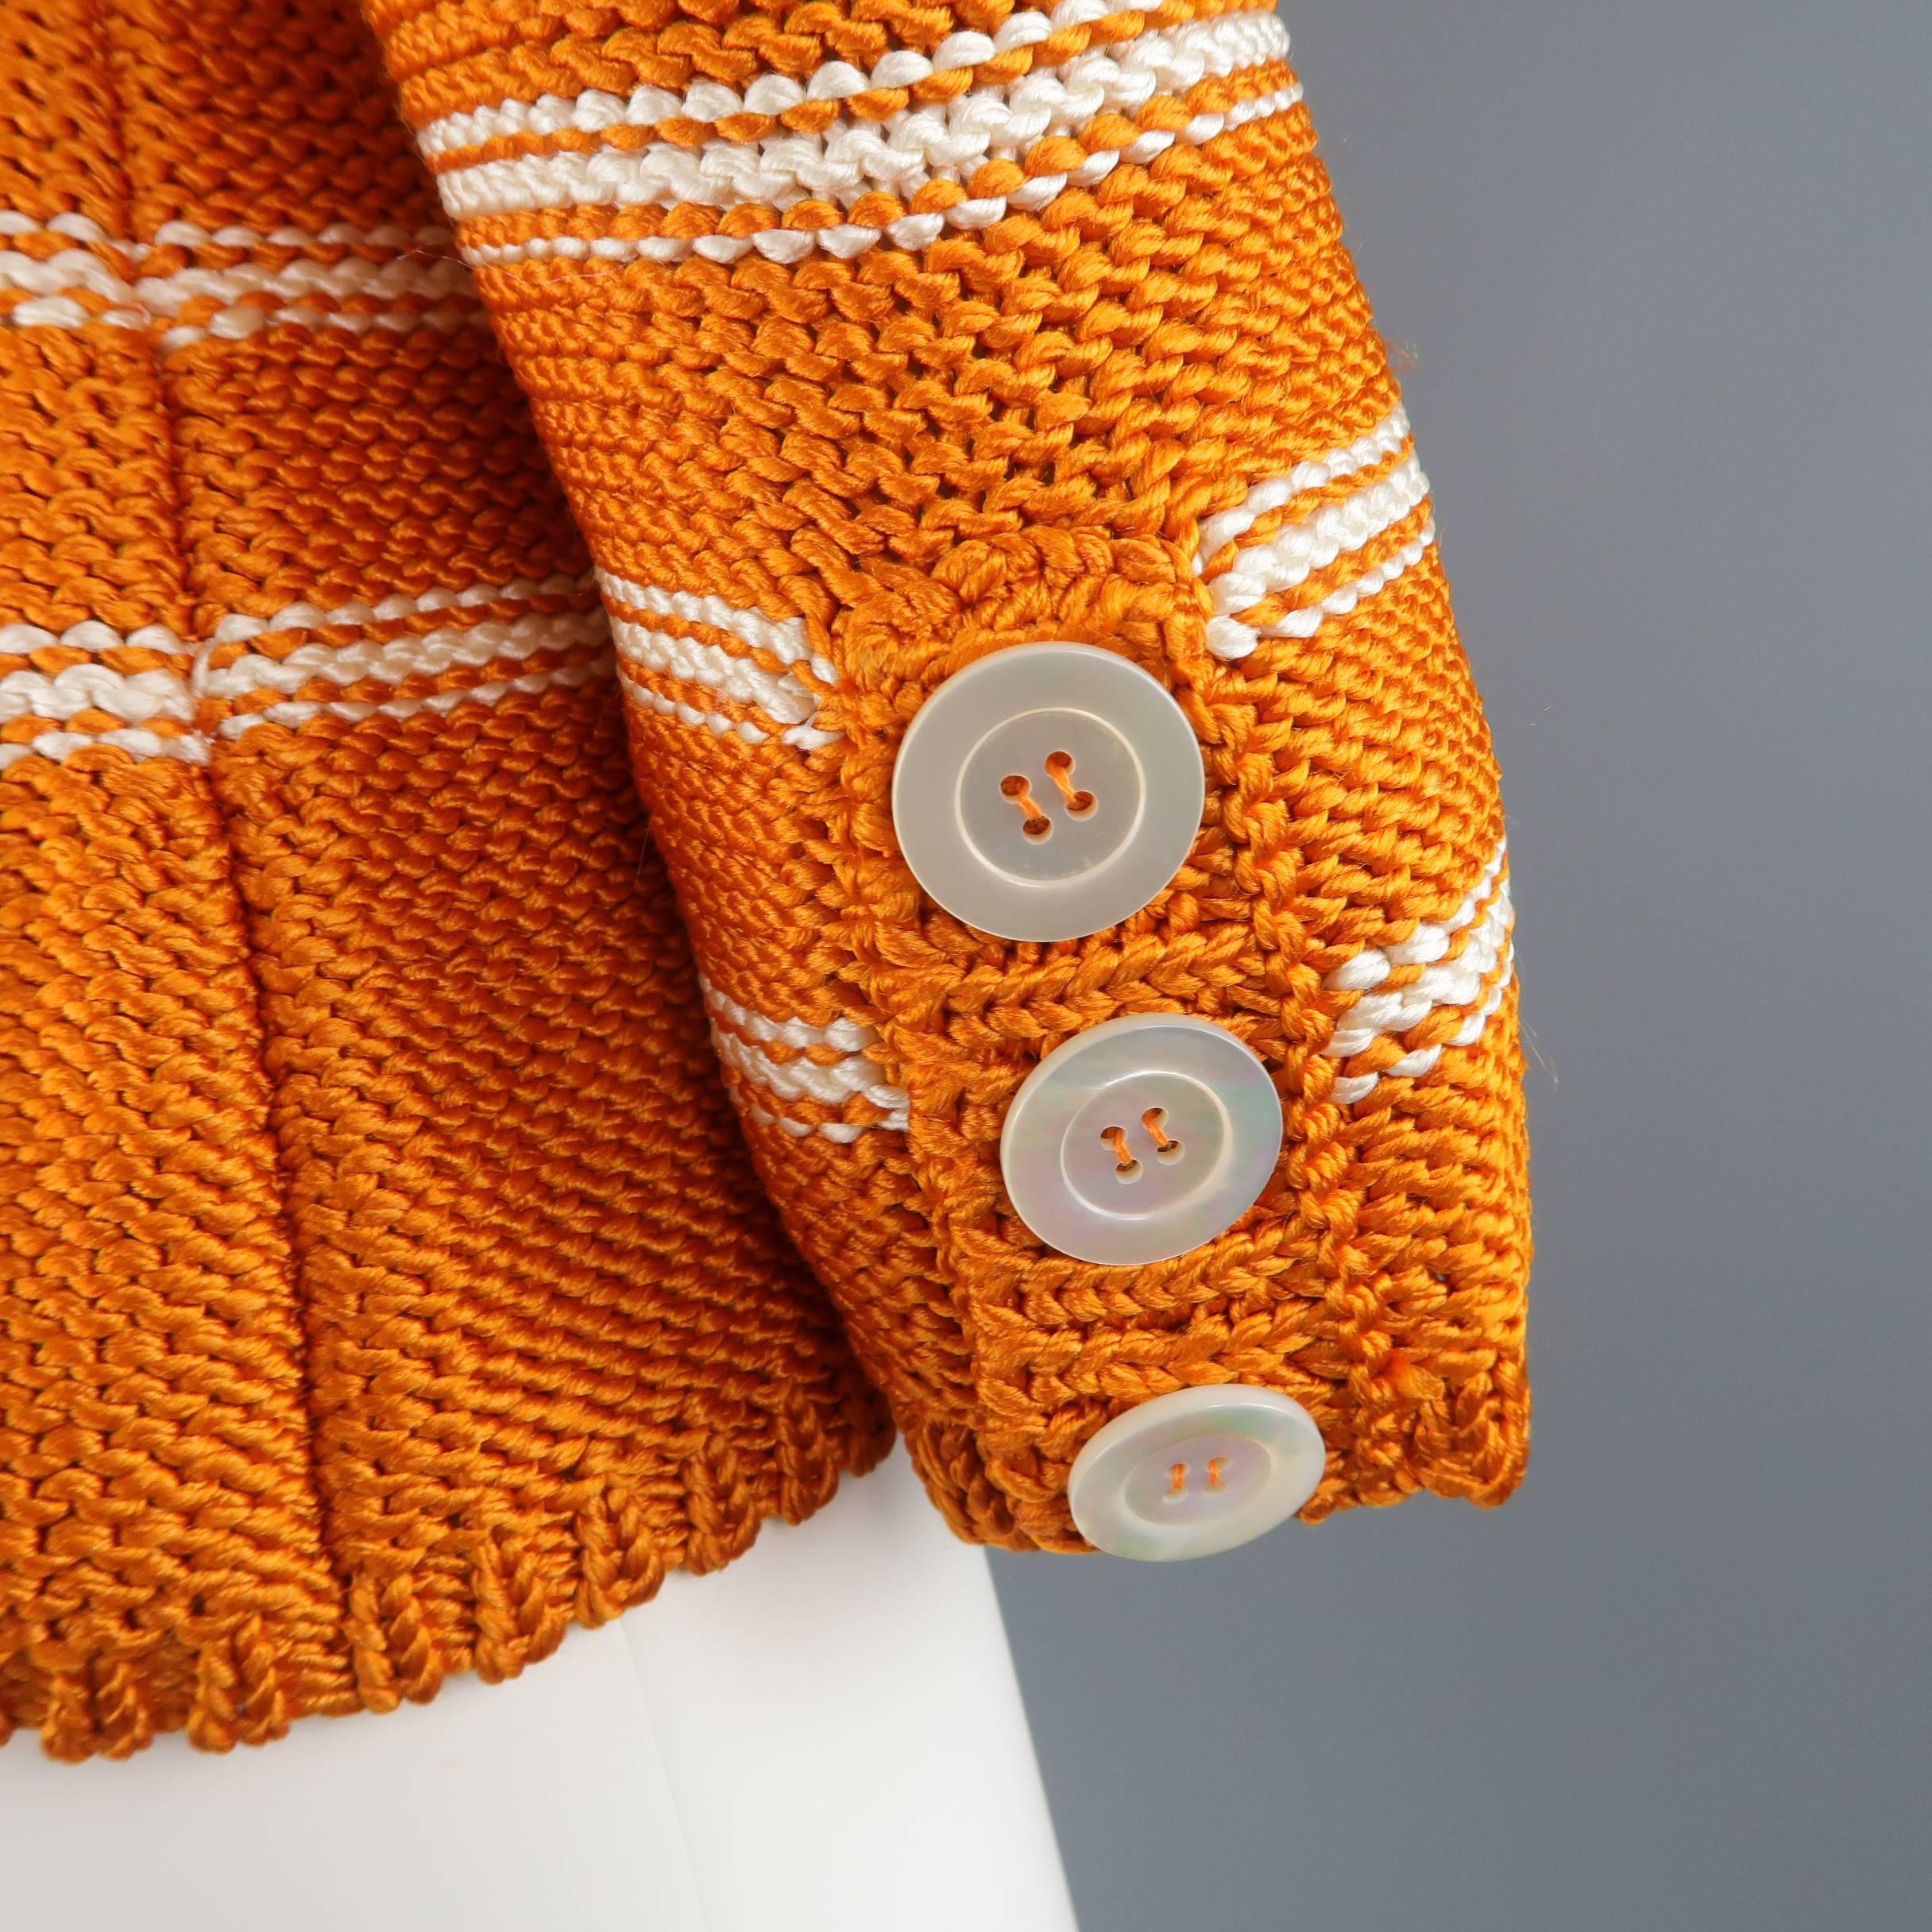 Women's Oscar de la Renta Orange and Cream Striped Silk Knit Pullover